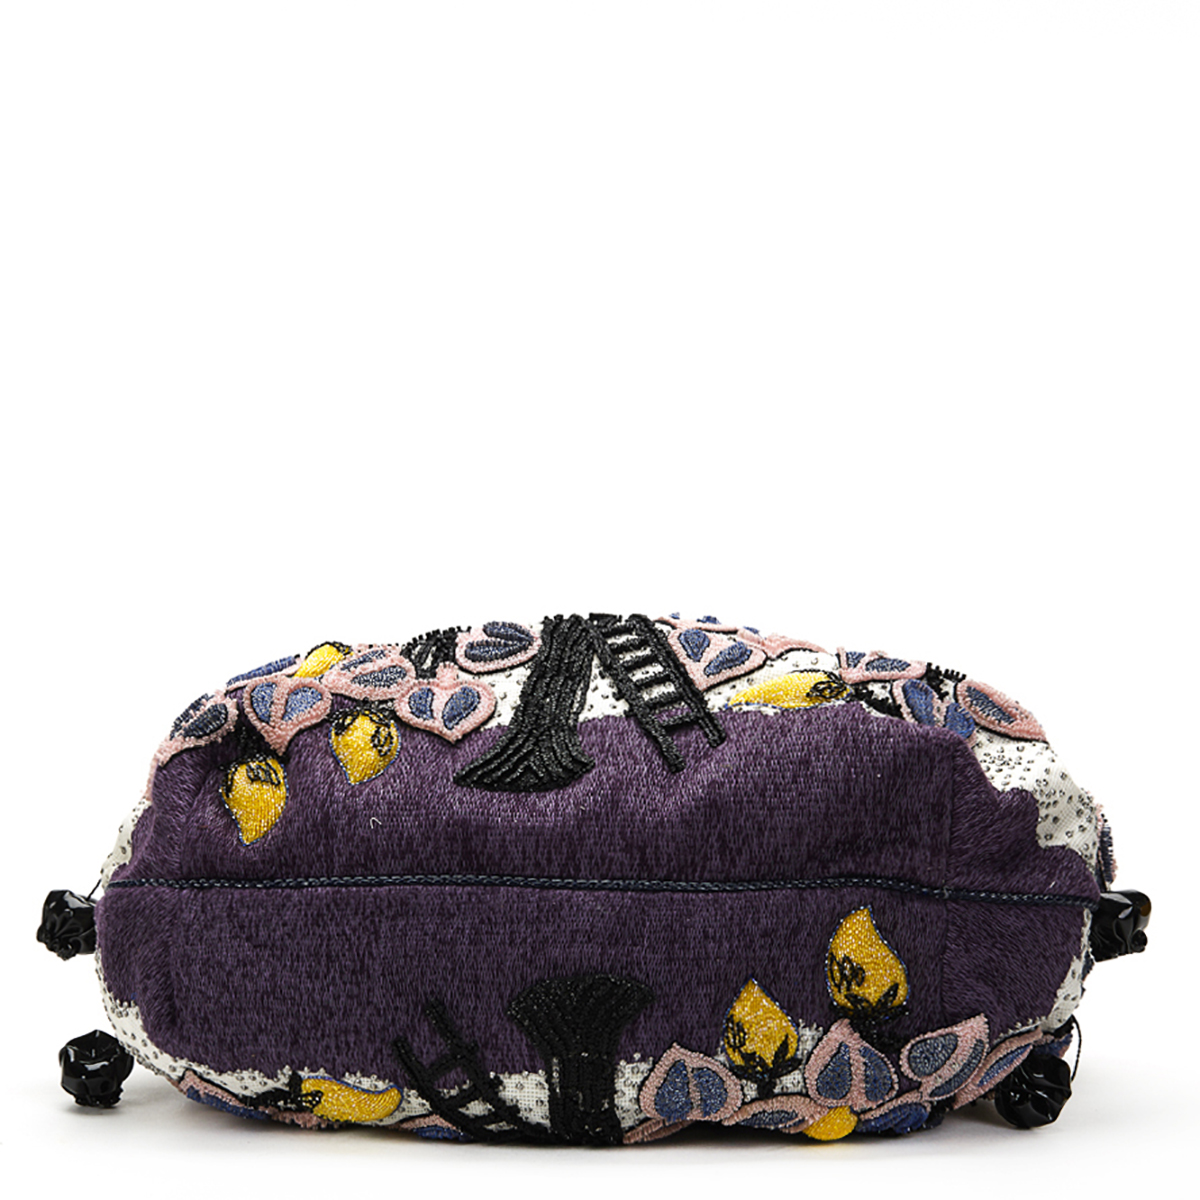 FENDI Spy Bag , - Multicolour Embellished Floral Spy Bag   TYPE Tote, Shoulder SERIAL NUMBER 2415- - Image 2 of 16